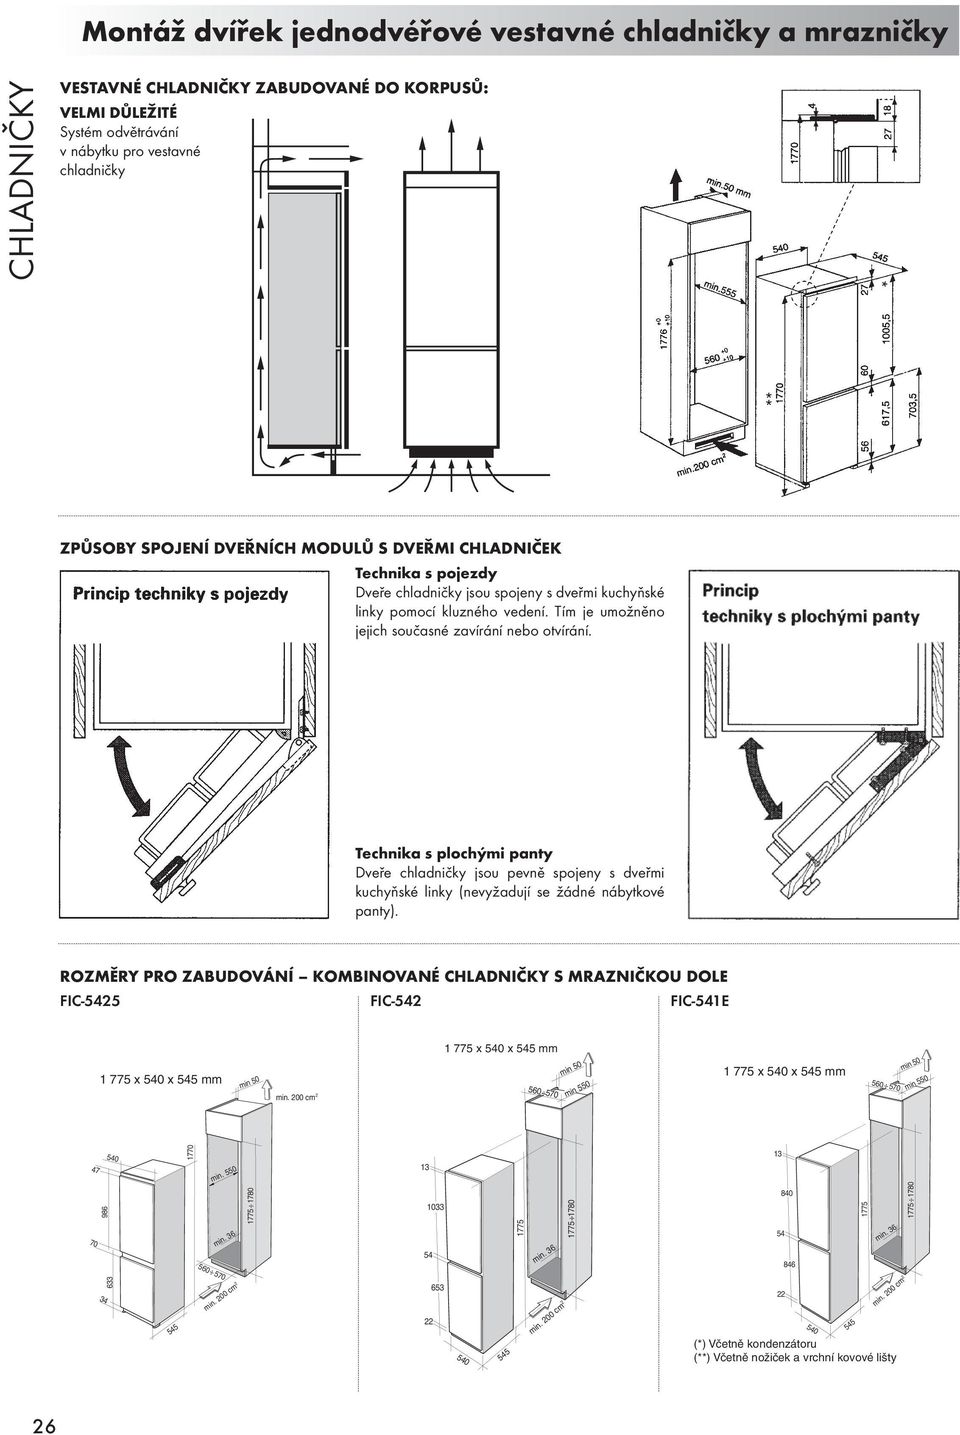 Technika s plochými panty Dveře chladničky jsou pevně spojeny s dveřmi kuchyňské linky (nevyžadují se žádné nábytkové panty).